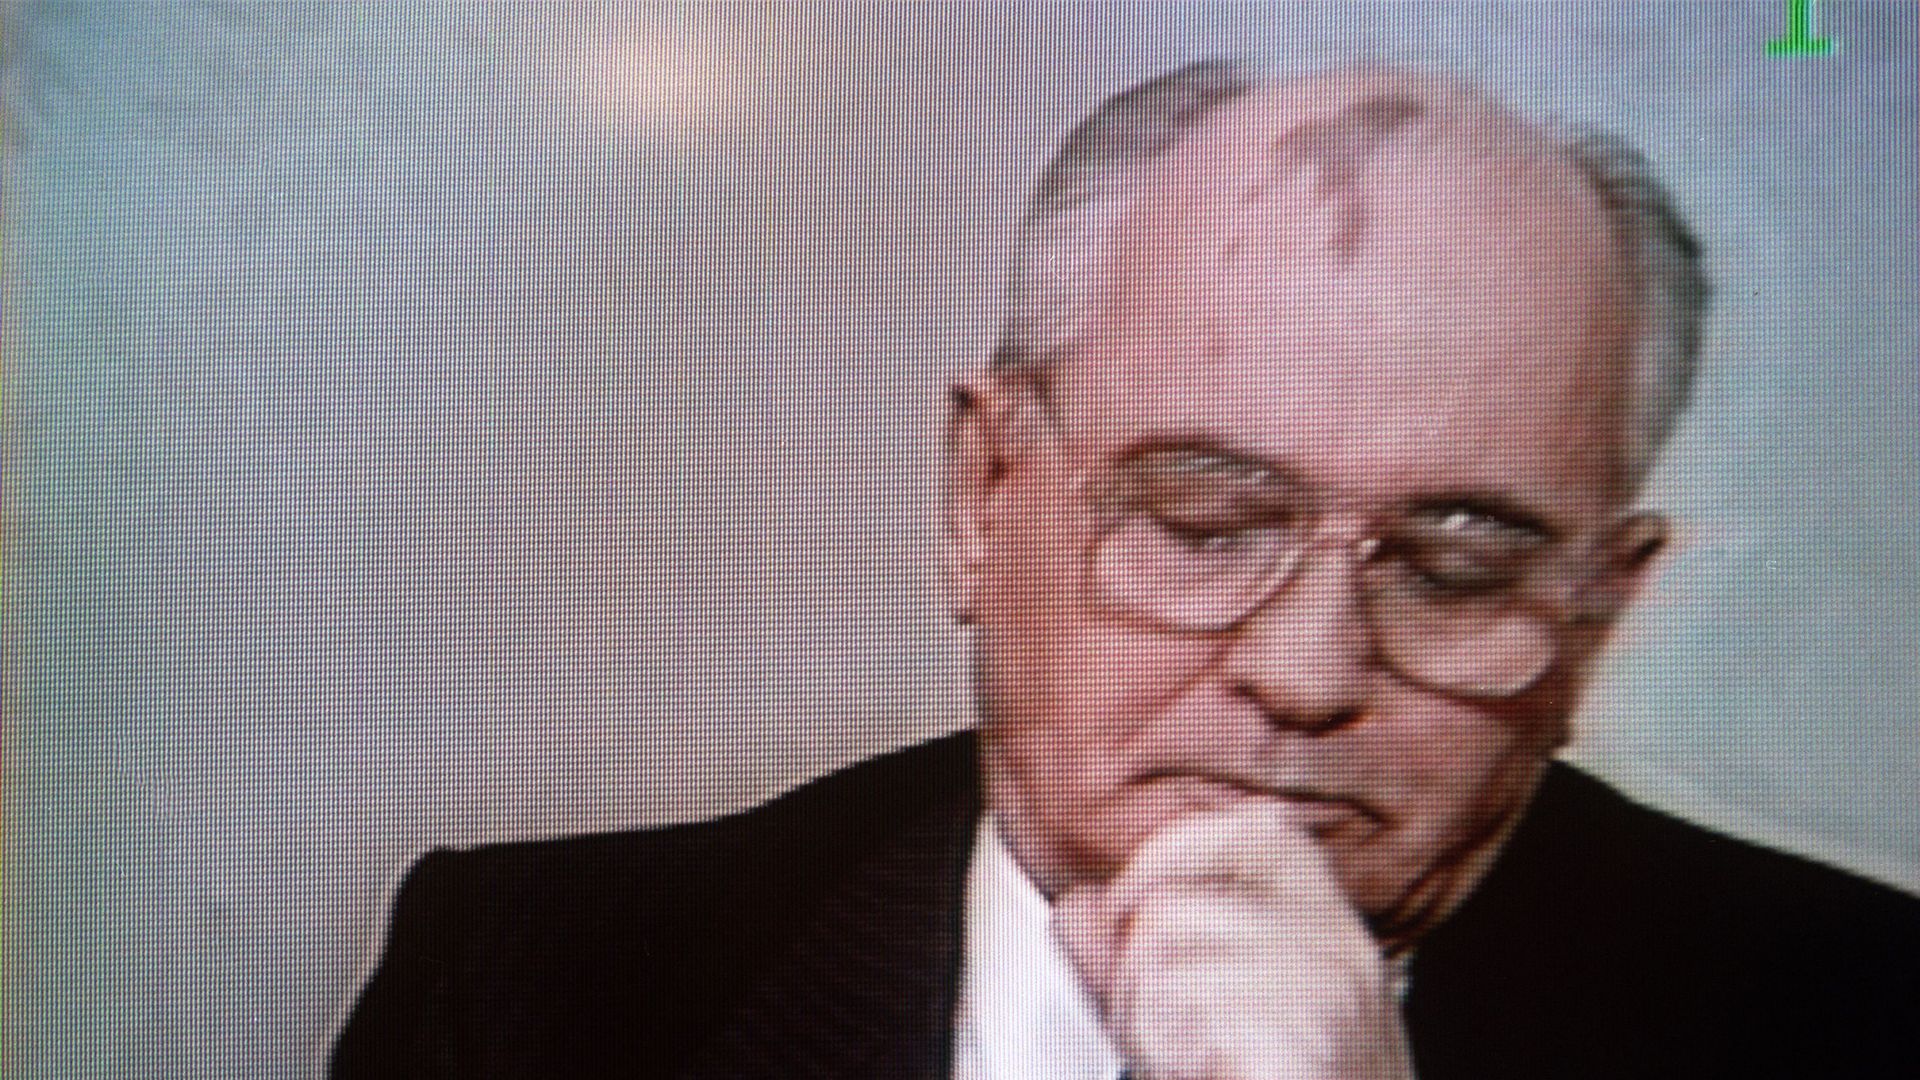 Le président soviétique Mikhaïl Gorbatchev a l'air abattu alors qu'il s'adresse à la nation pour annoncer sa démission sur une image télévisée prise à Moscou le 25 décembre 1991. Gorbatchev a ainsi mis fin à près de sept ans de pouvoir et a marqué la fin 